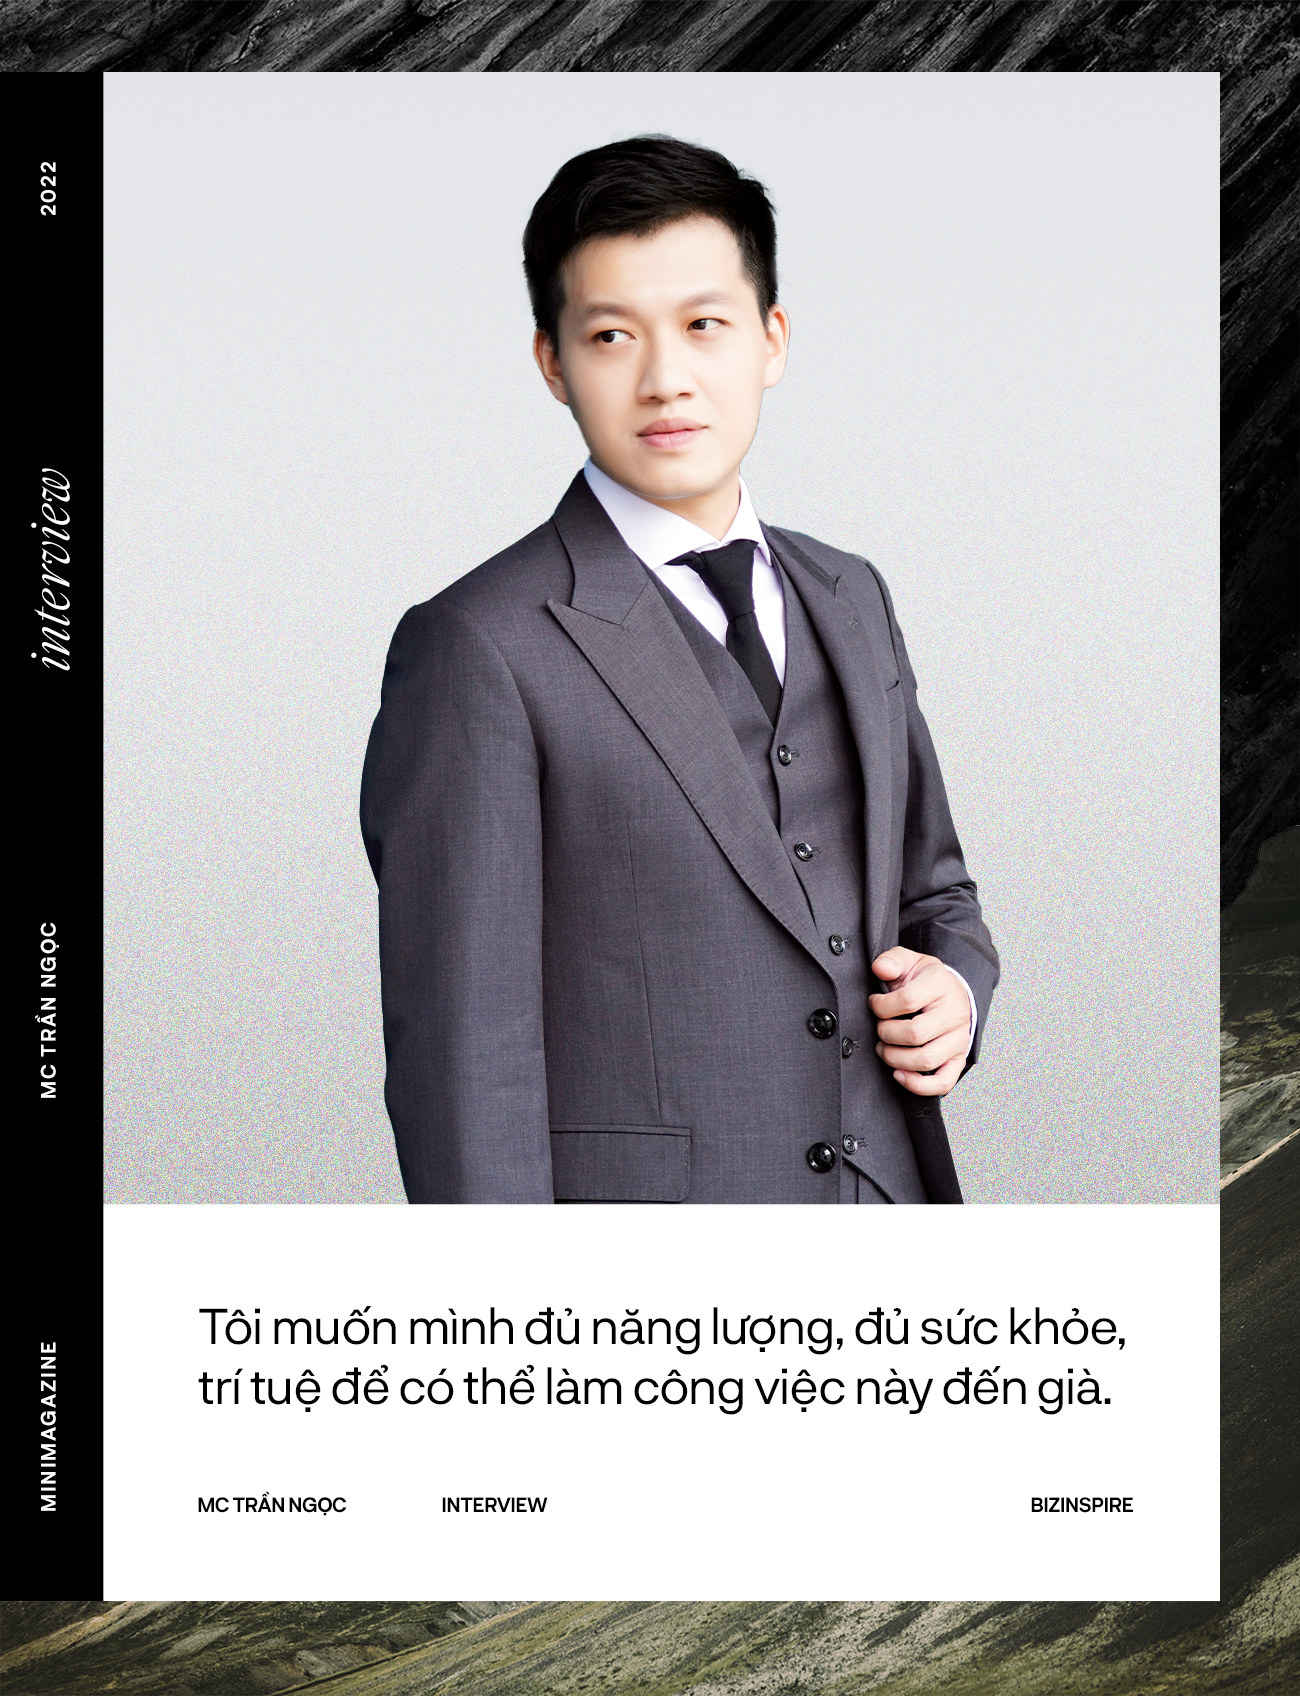 MC Trần Ngọc là một người dẫn chương trình nổi tiếng và được yêu thích tại Việt Nam. Hãy xem hình ảnh của MC Trần Ngọc để biết thêm về cuộc đời và sự nghiệp của anh. Bạn sẽ được tiếp cận với một người dẫn chương trình tài năng, nhiệt tình và có tầm ảnh hưởng lớn trên cộng đồng.